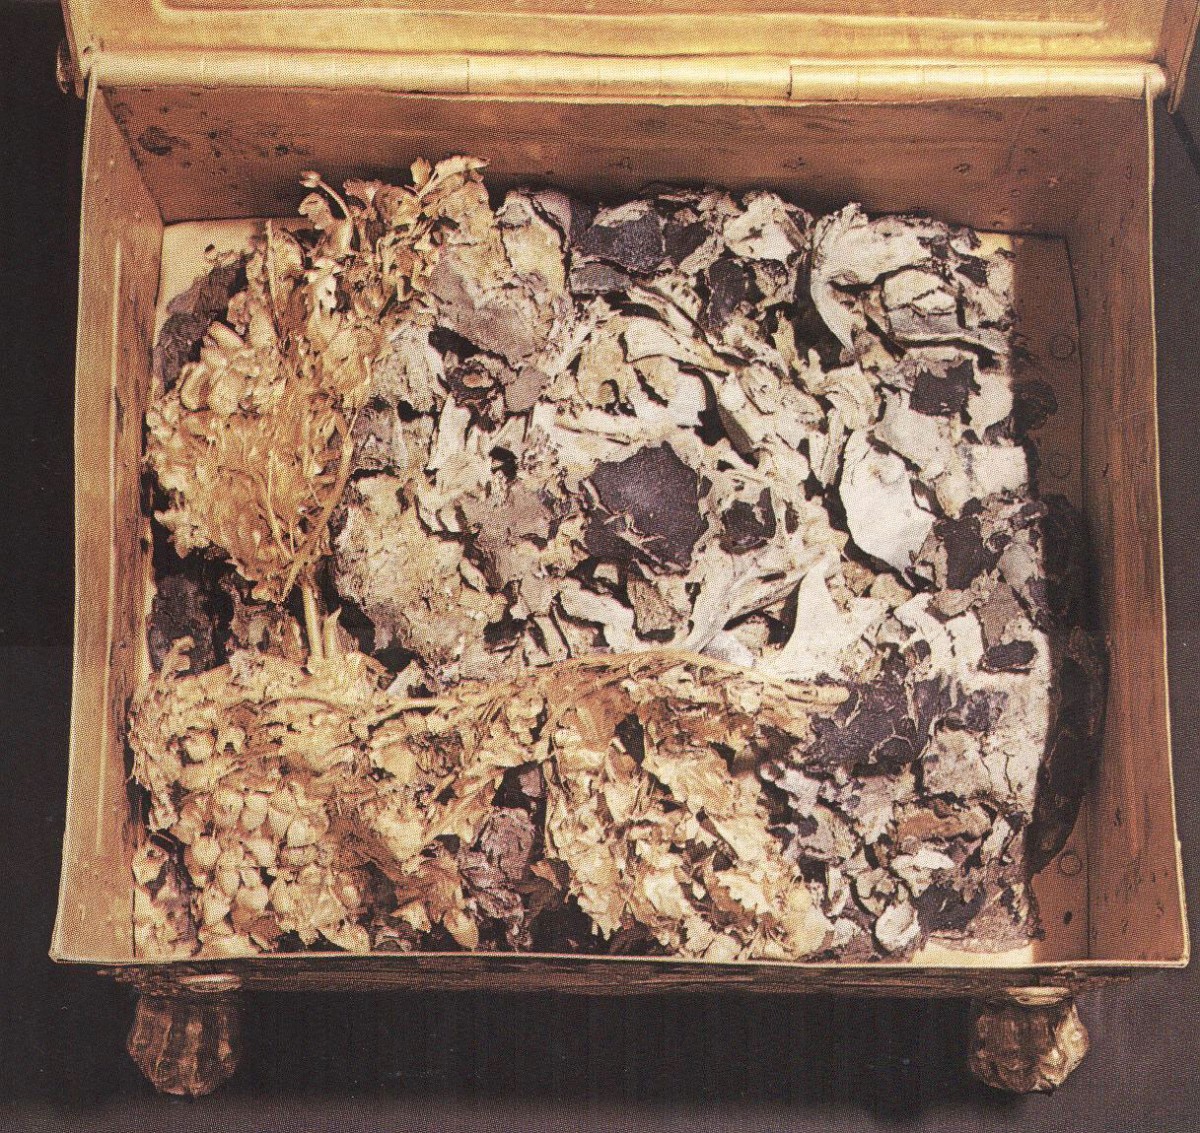 Εικ. 1. Το εσωτερικό της χρυσής λάρνακας από το θάλαμο του τάφου ΙΙ στη Μεγάλη Τούμπα της Βεργίνας. Διακρίνονται πάνω από τα οστά το χρυσό στεφάνι βελανιδιάς και τα θραύσματα πορφύρας και χουντίτη.